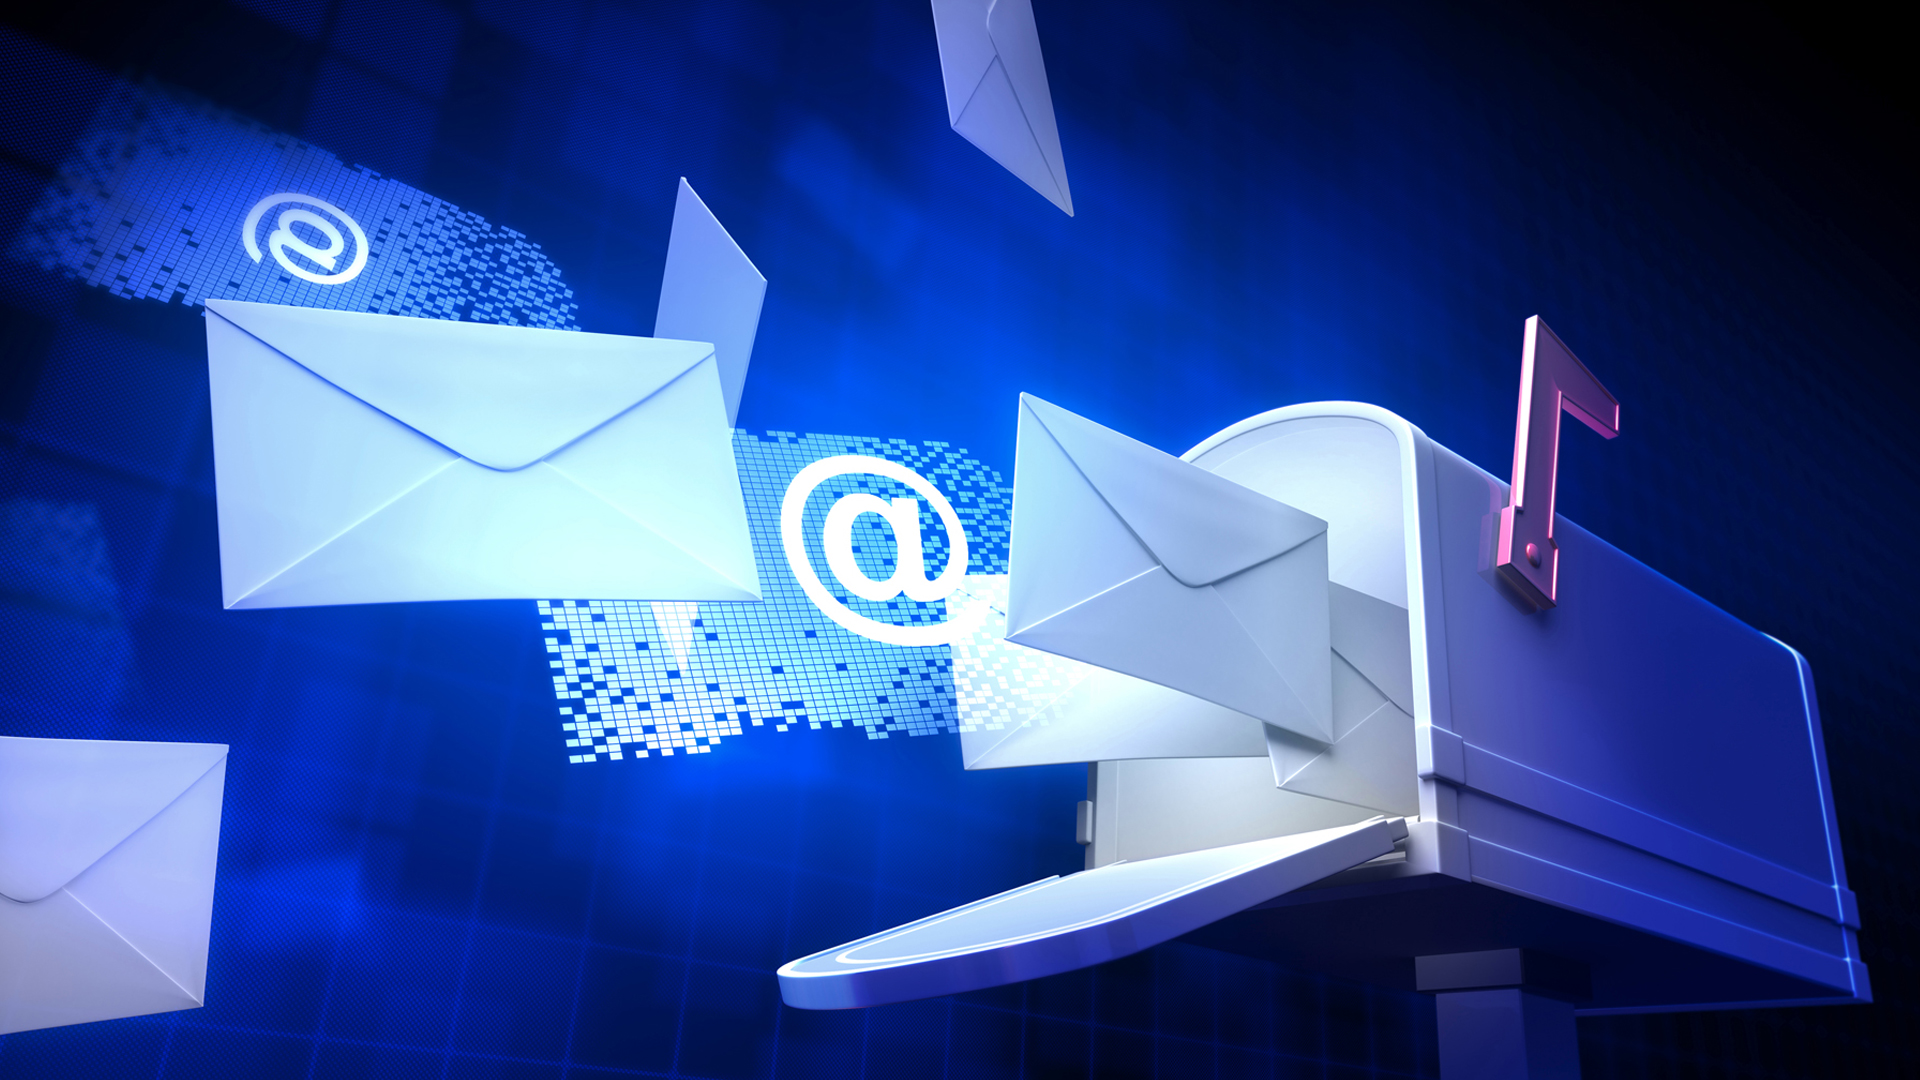 Email-Marketing-Monkmailer.jpg (1920×1080)